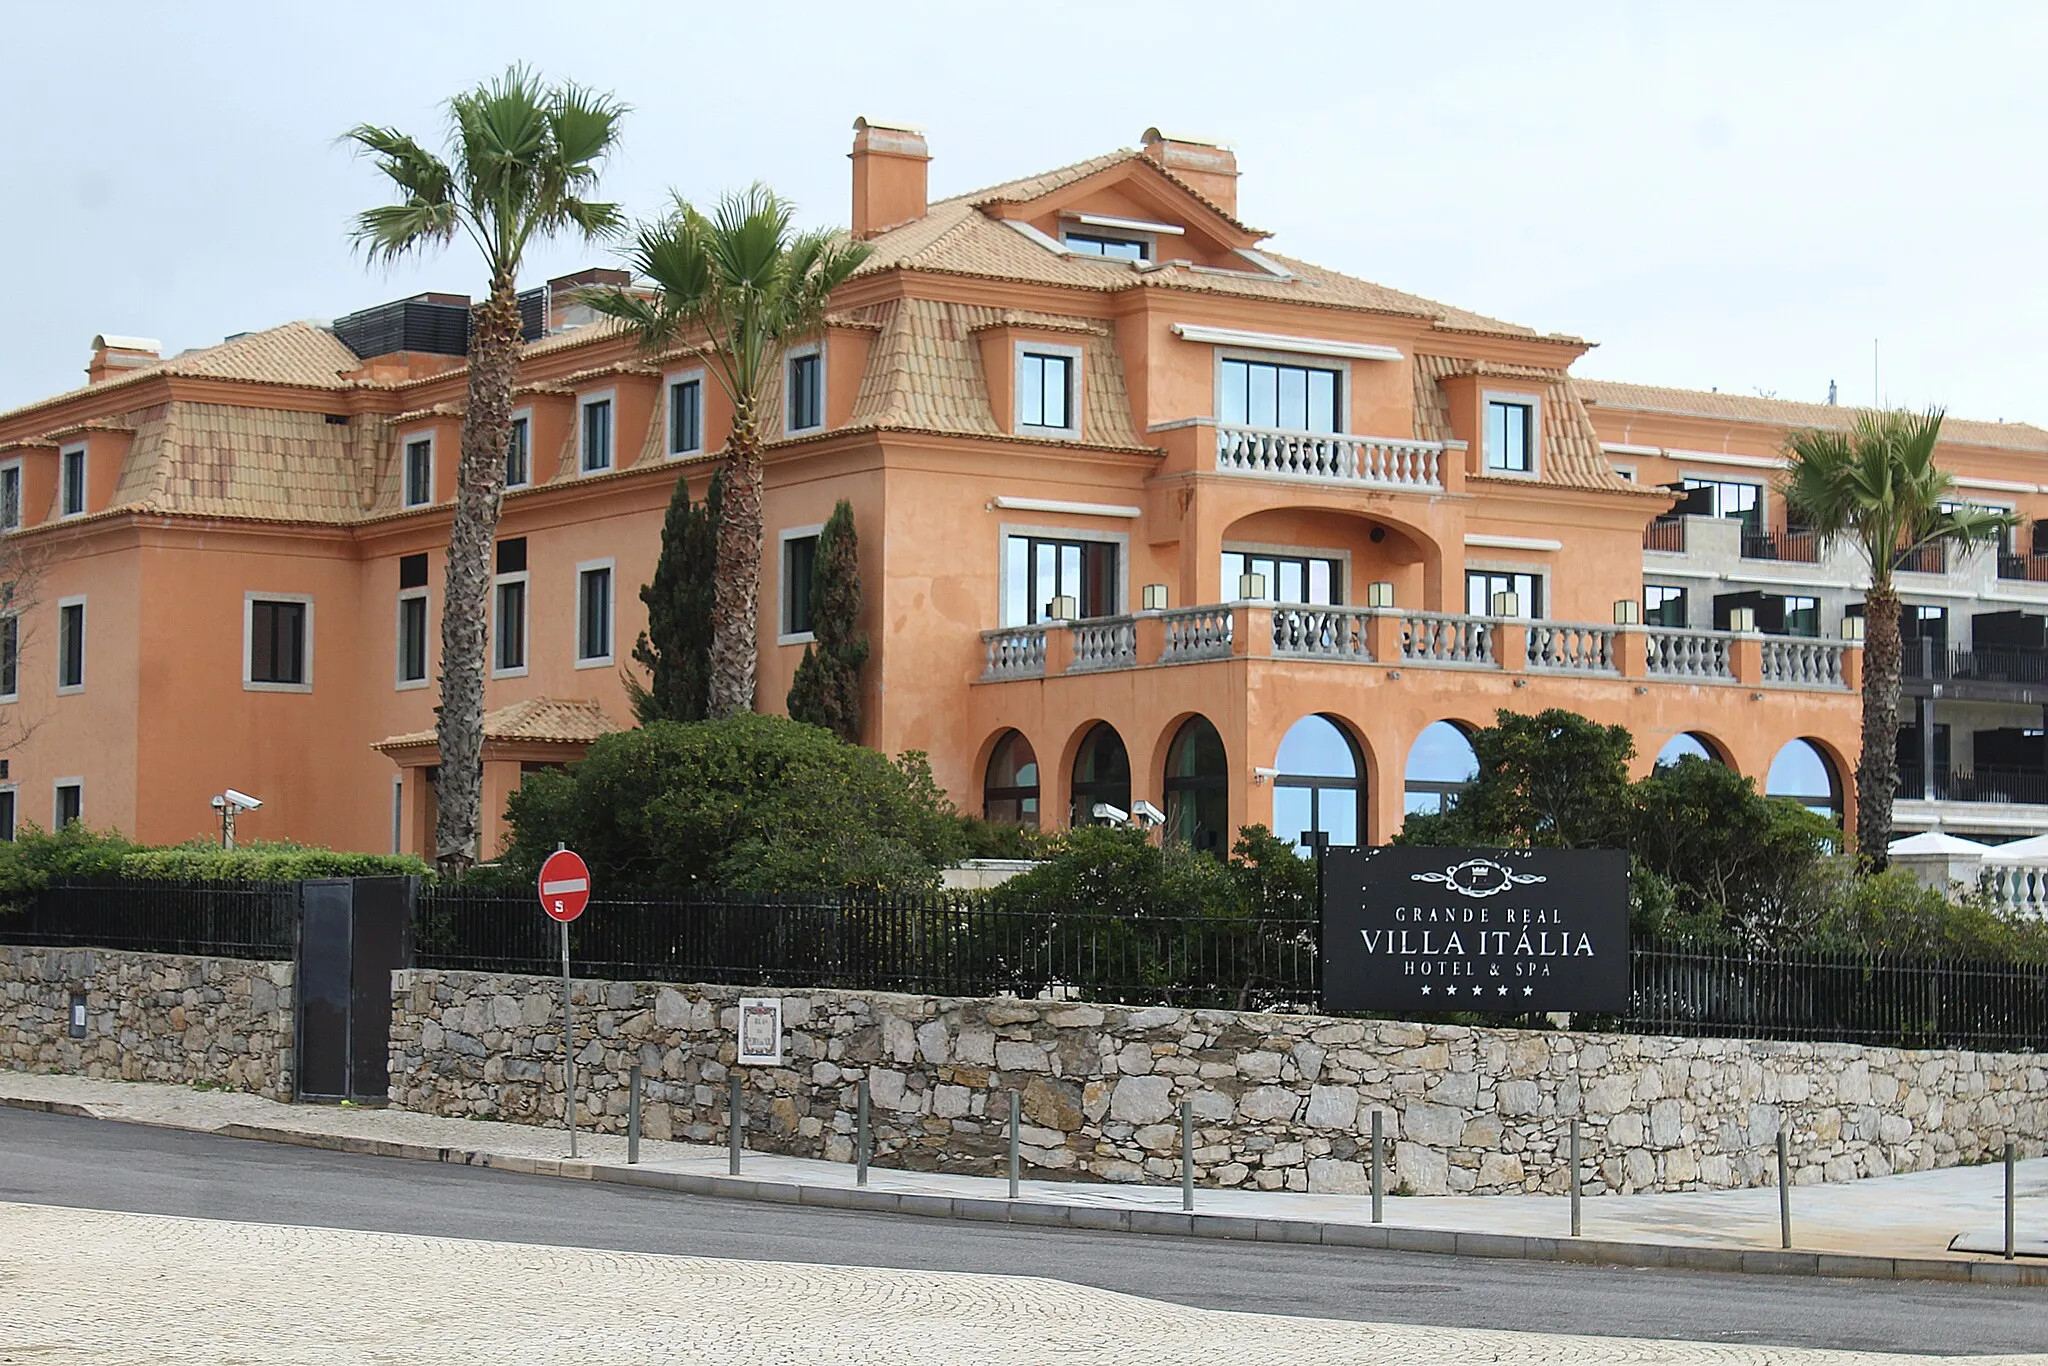 Photo showing: Cascais, the Grande Real Villa Itália Hotel & Spa